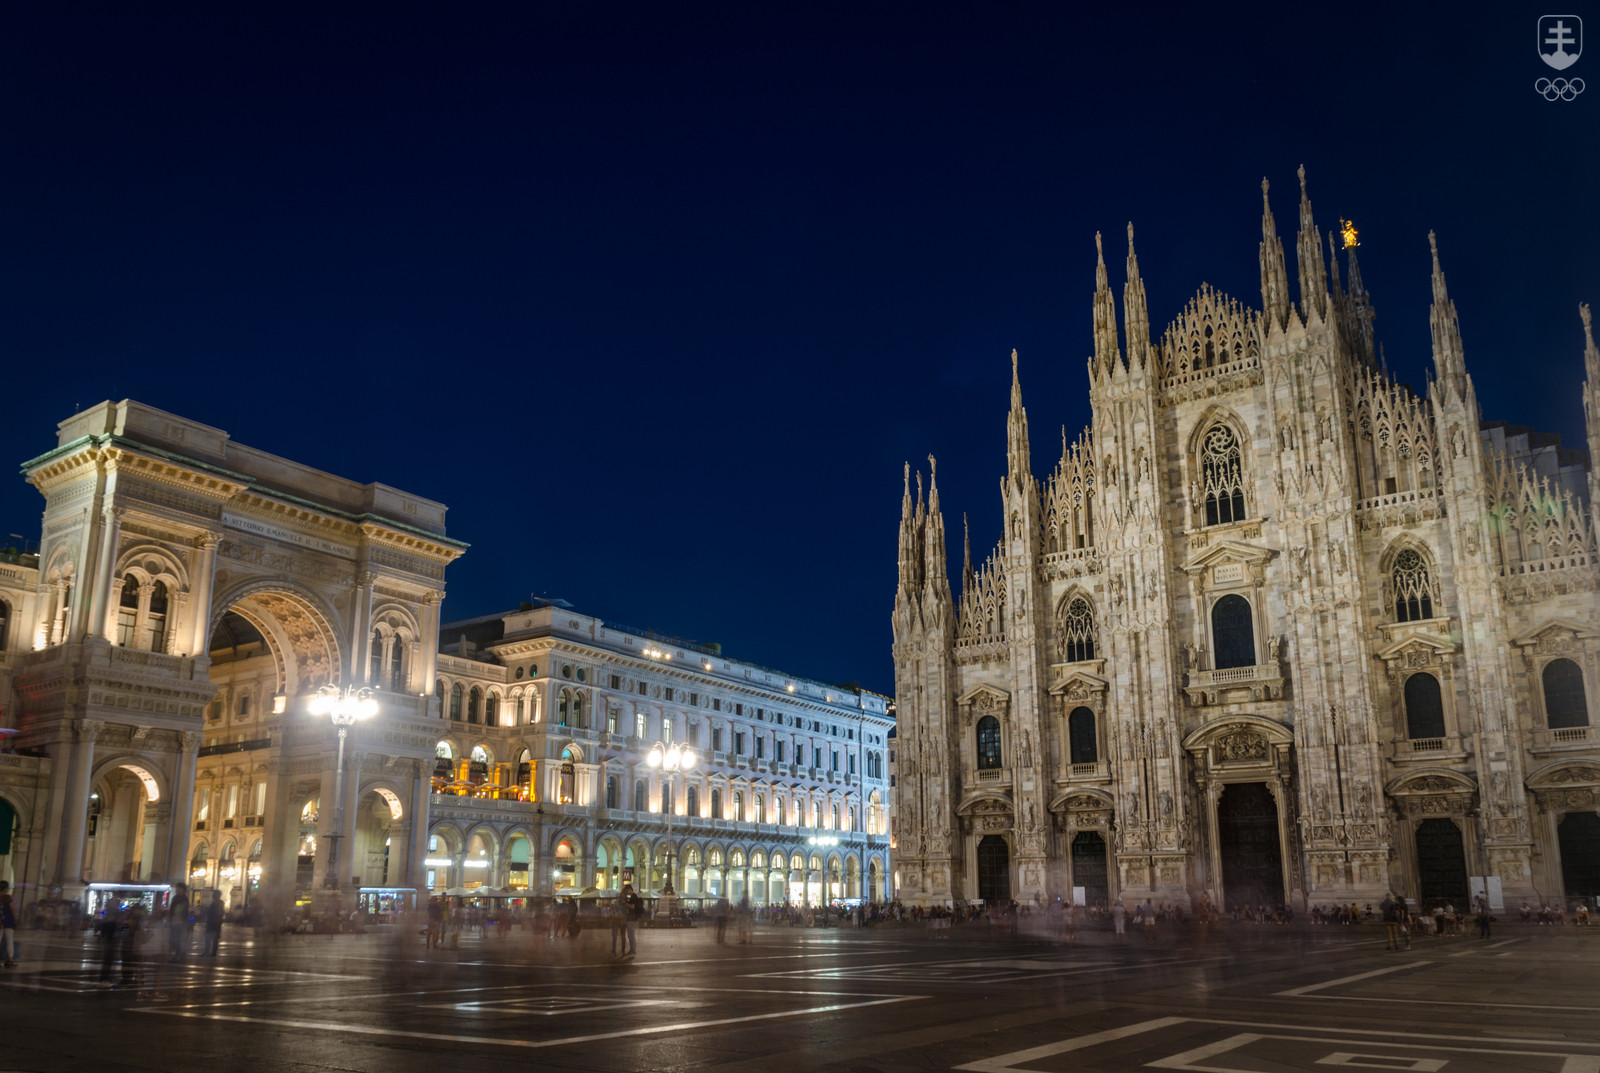 Milánske dominanty – dóm a vľavo známa obchodná galéria.